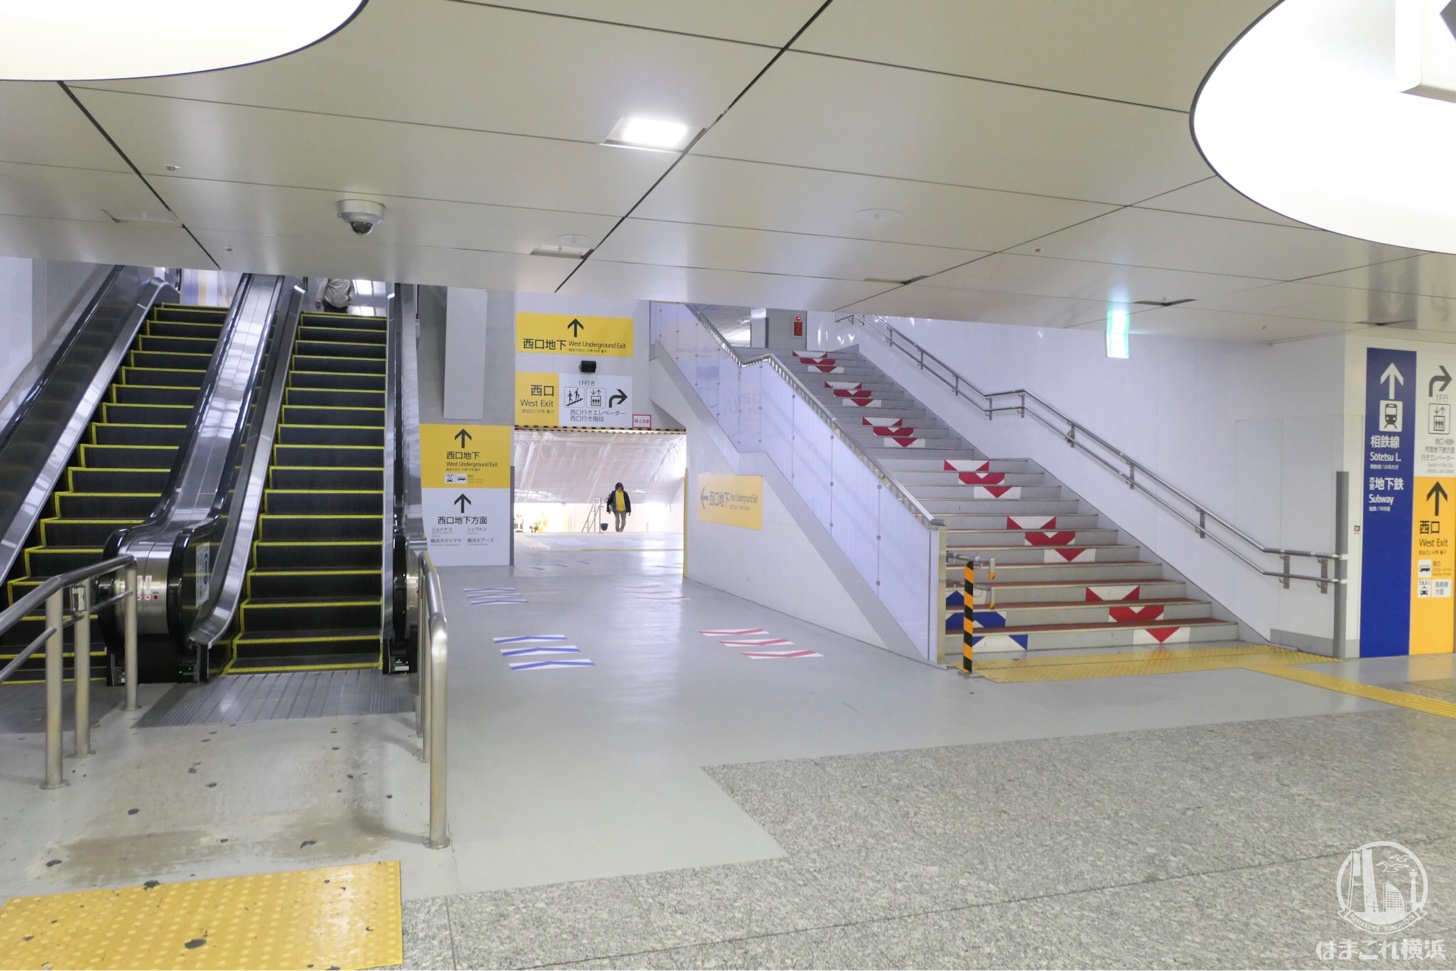 横浜駅西口 中央自由通路とジョイナス地下街を繋ぐ仮地下通路が開通 馬の背解消へ はまこれ横浜